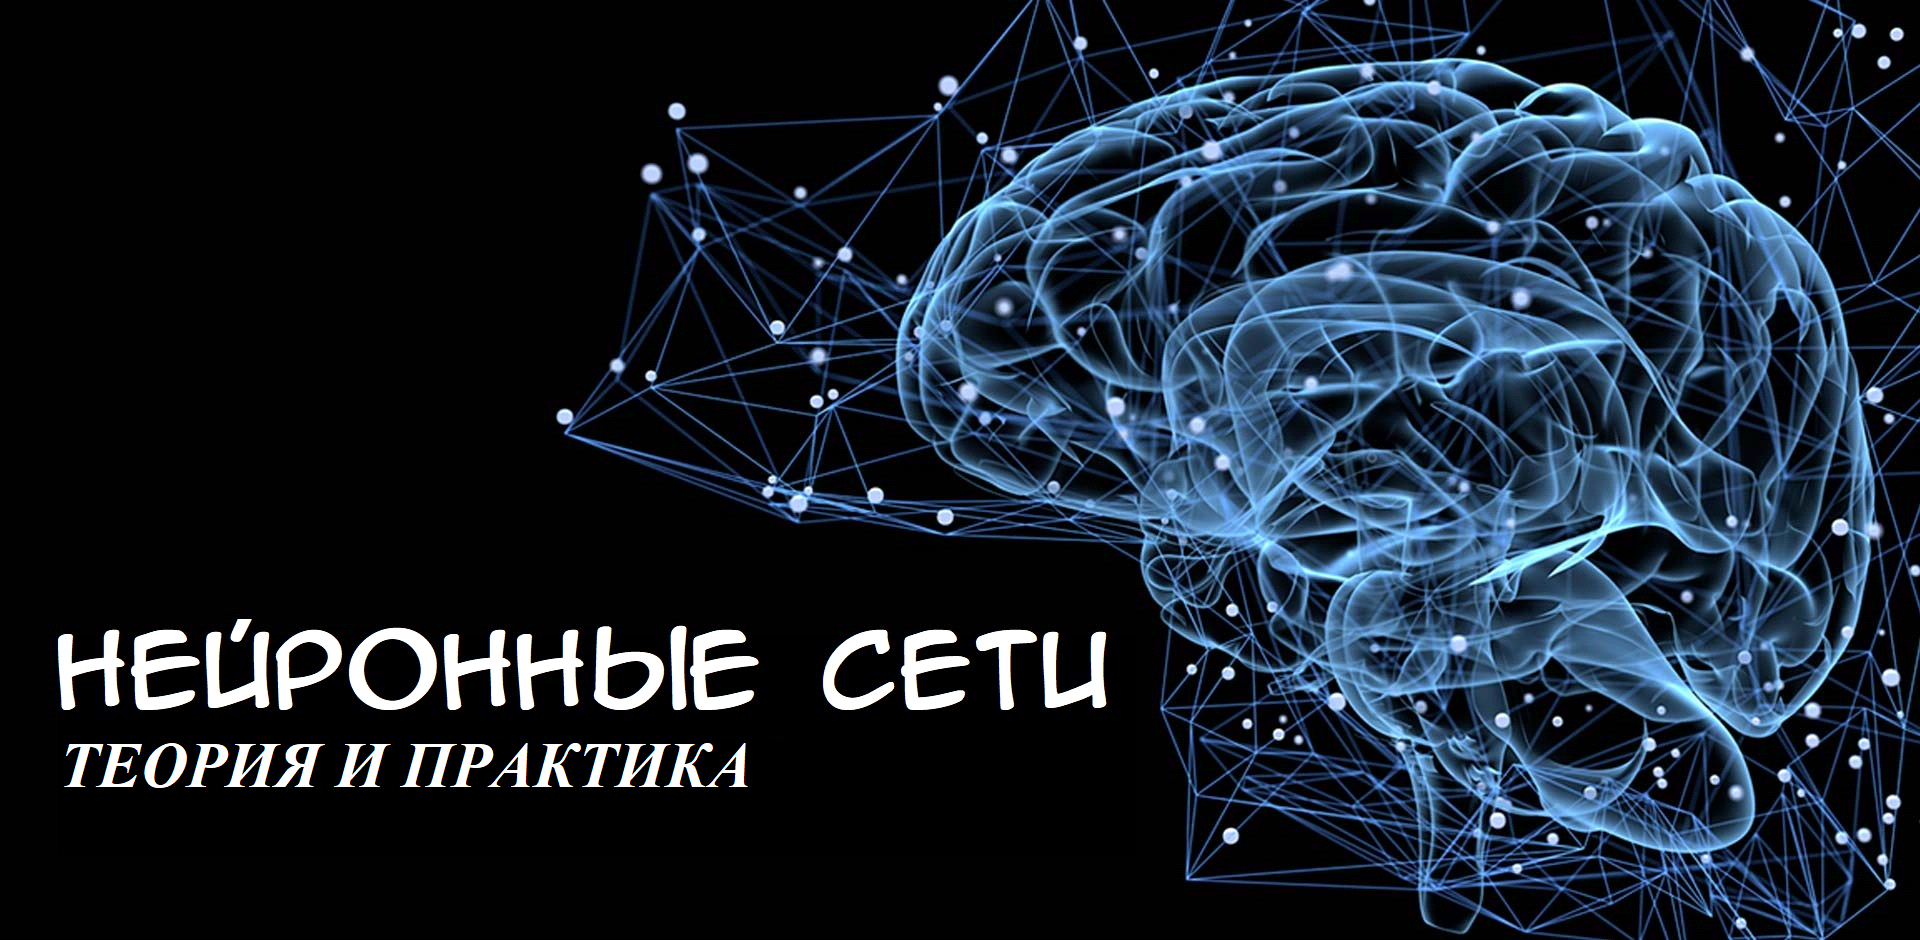 Нейронная сеть. Нейронные связи. Нейронная сеть мозга. Нейронные сети эмблема.